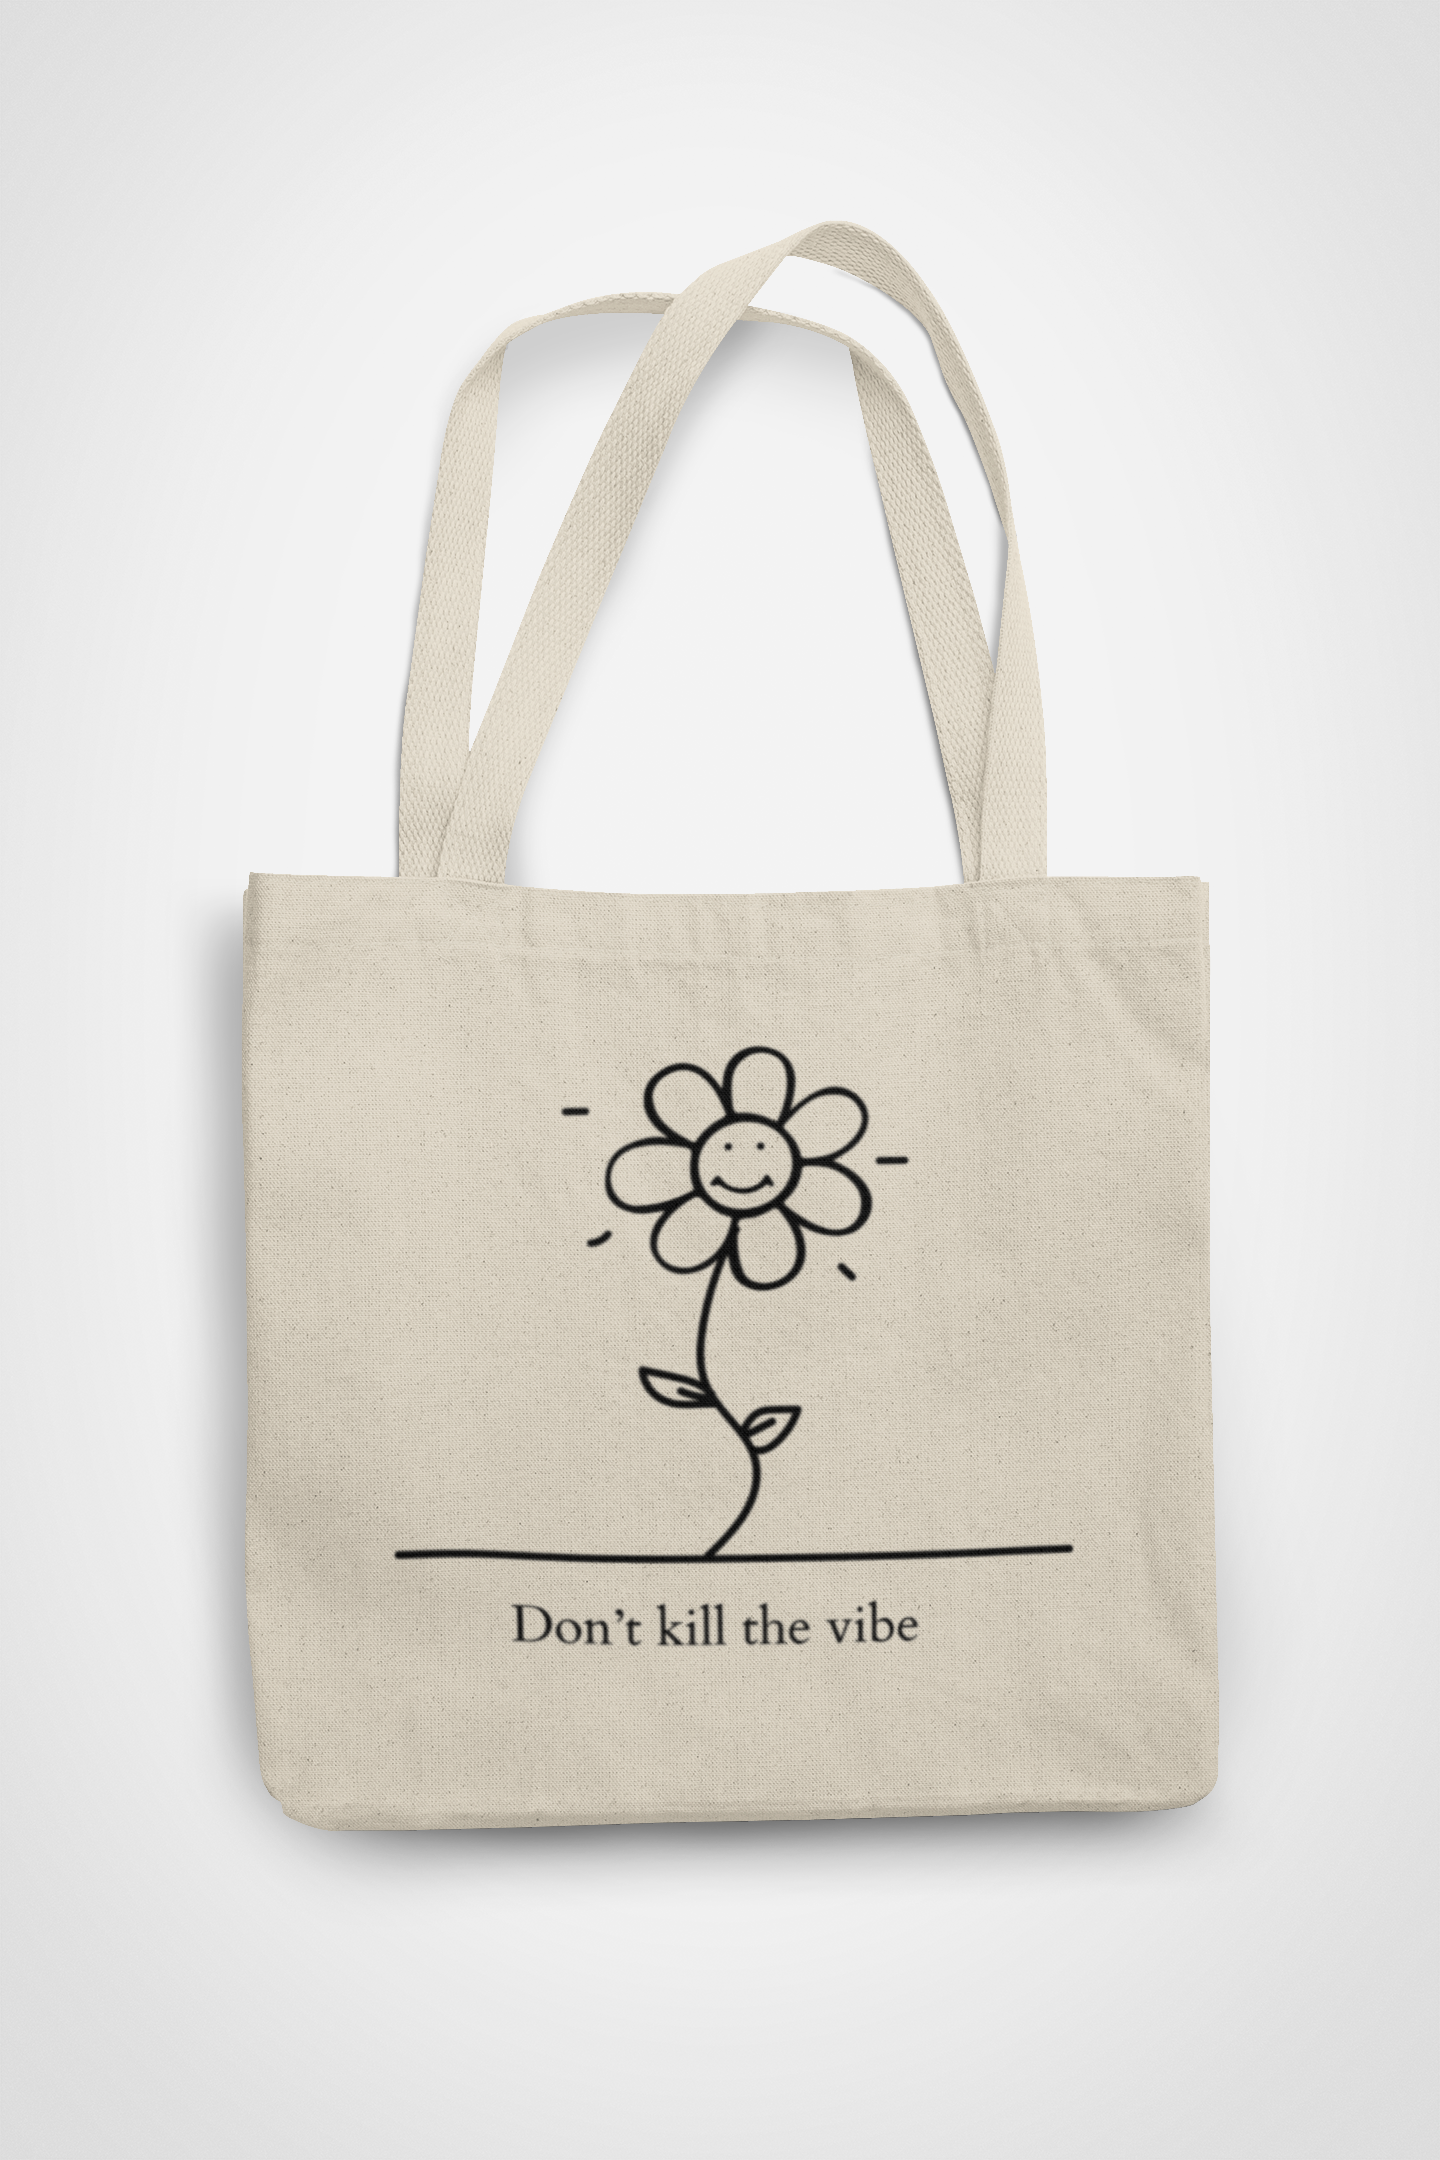 Zipped Tote Bag - Don't kill